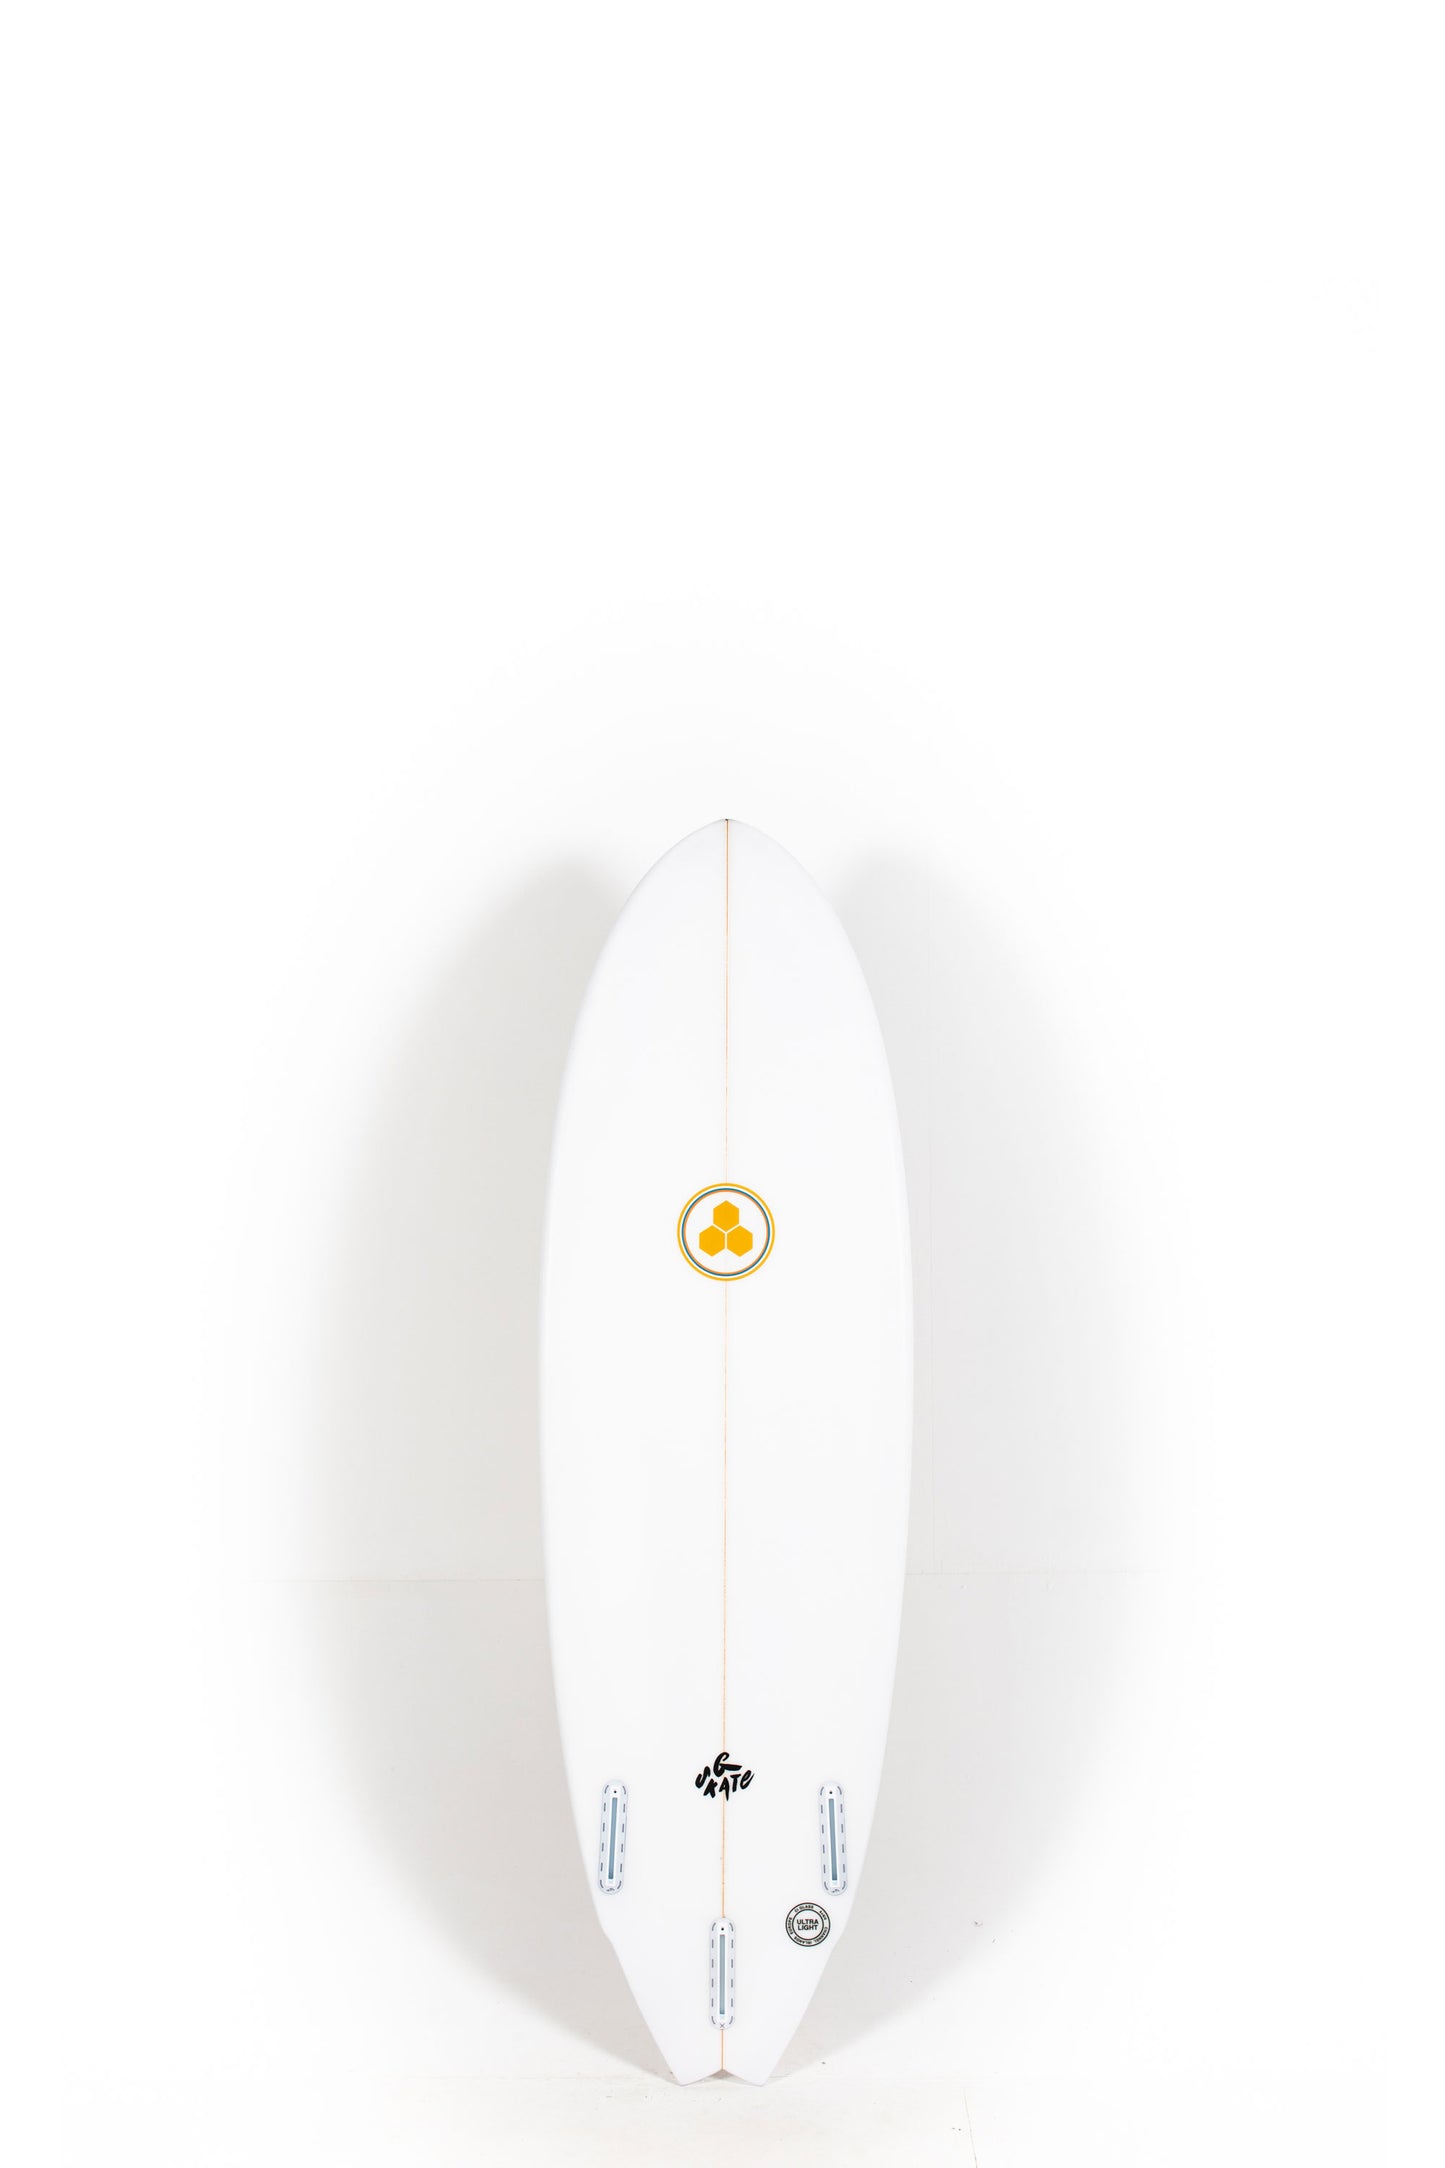 Pukas Surf Shop - Channel Islands - G-Skate by Al Merrick - 5'6" x 19 1/4 x 2 7/16 - 29.1L - CI26690